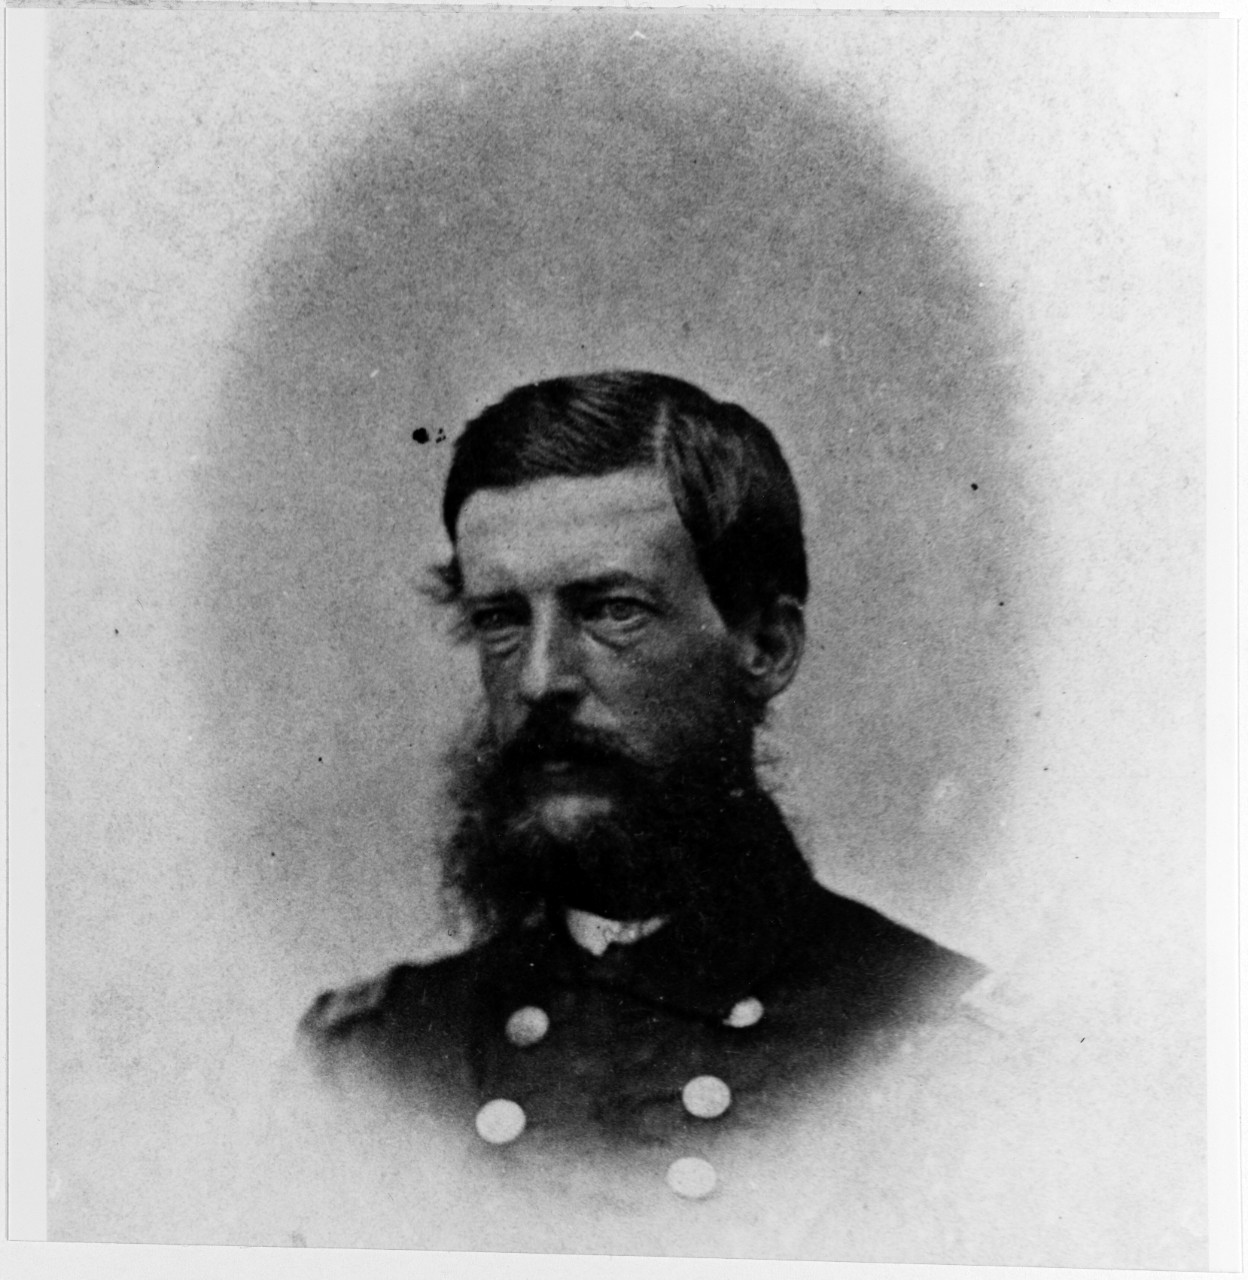 Lieutenant Commander Edward Y. McCauley, USN